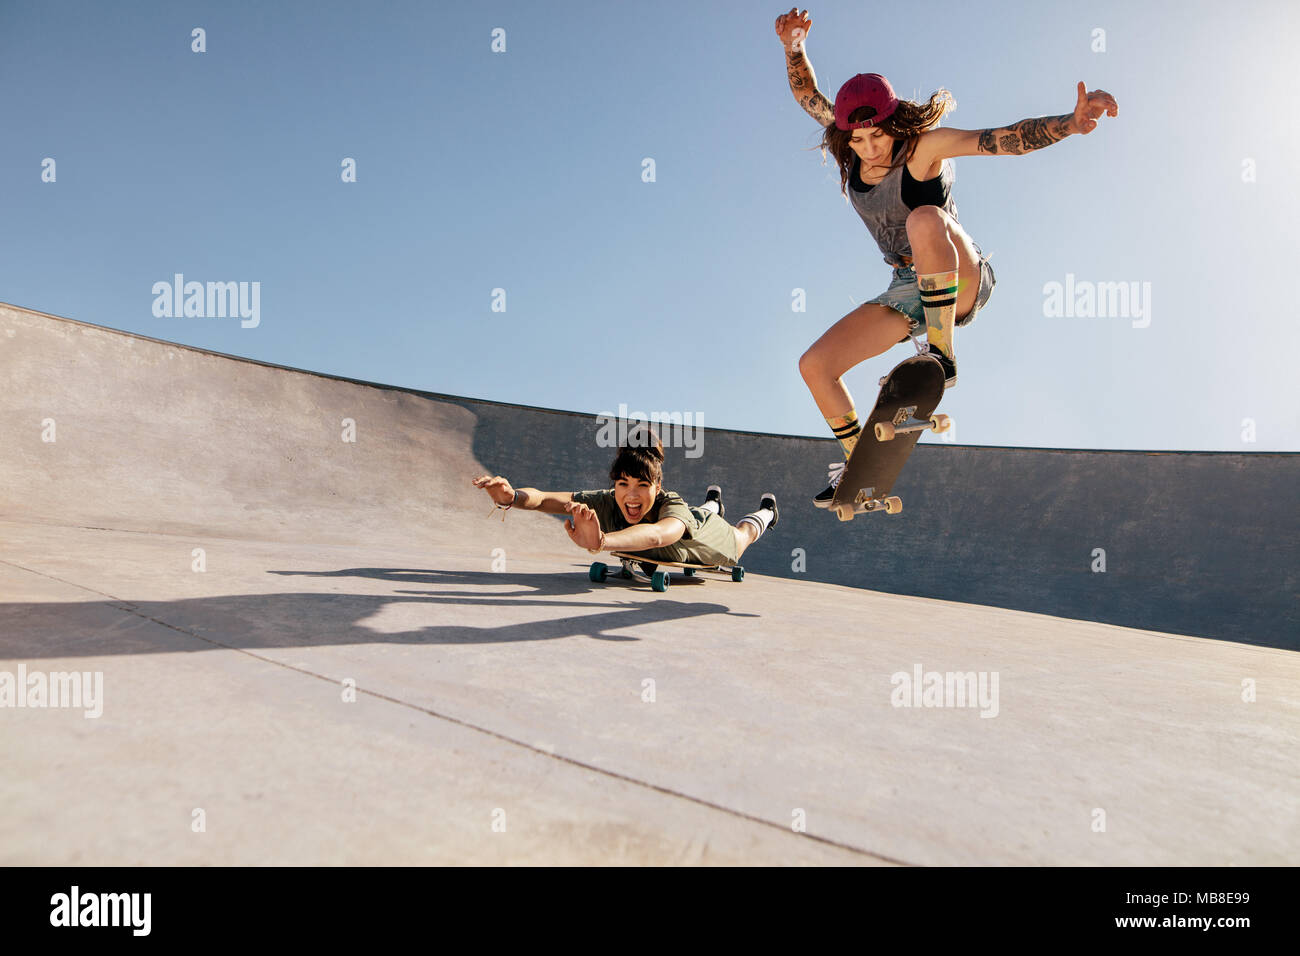 Deux femmes chargées de cascades sur skateboards au skate park. Amis féminins pratiquant la planche à roulettes à l'extérieur. Banque D'Images